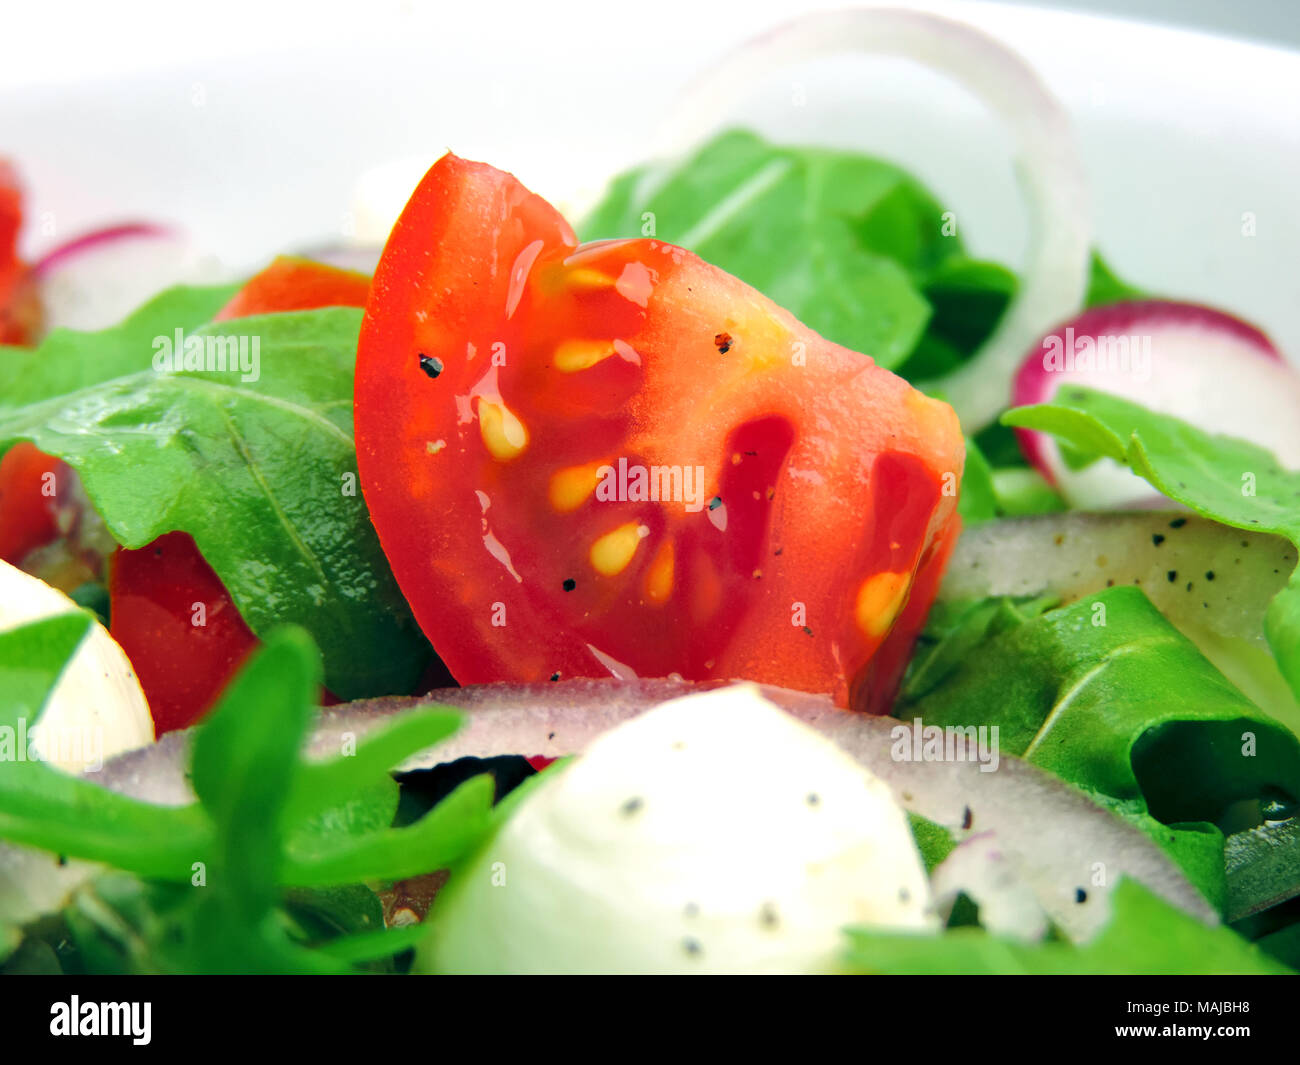 Salade gourmande ou frais salade caprese avec tomates, oignons rouges, roquette et mozzarella fromage sur une assiette blanche. Gros plan de salade fraîche. Banque D'Images